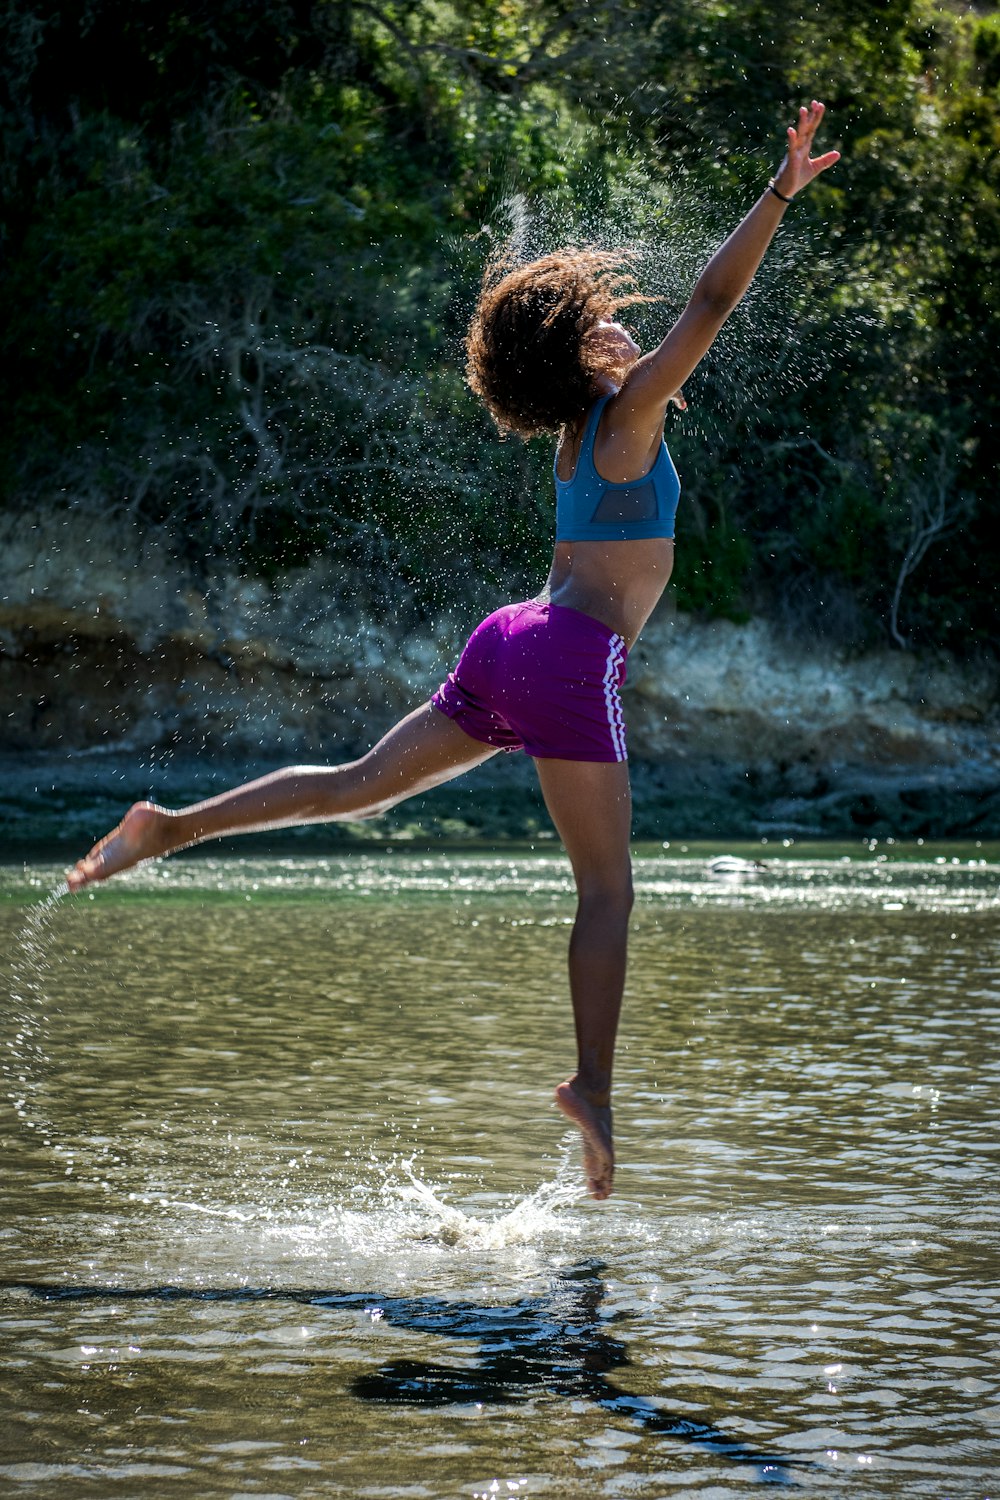 Frau springt tagsüber auf Gewässer in der Nähe von Bäumen